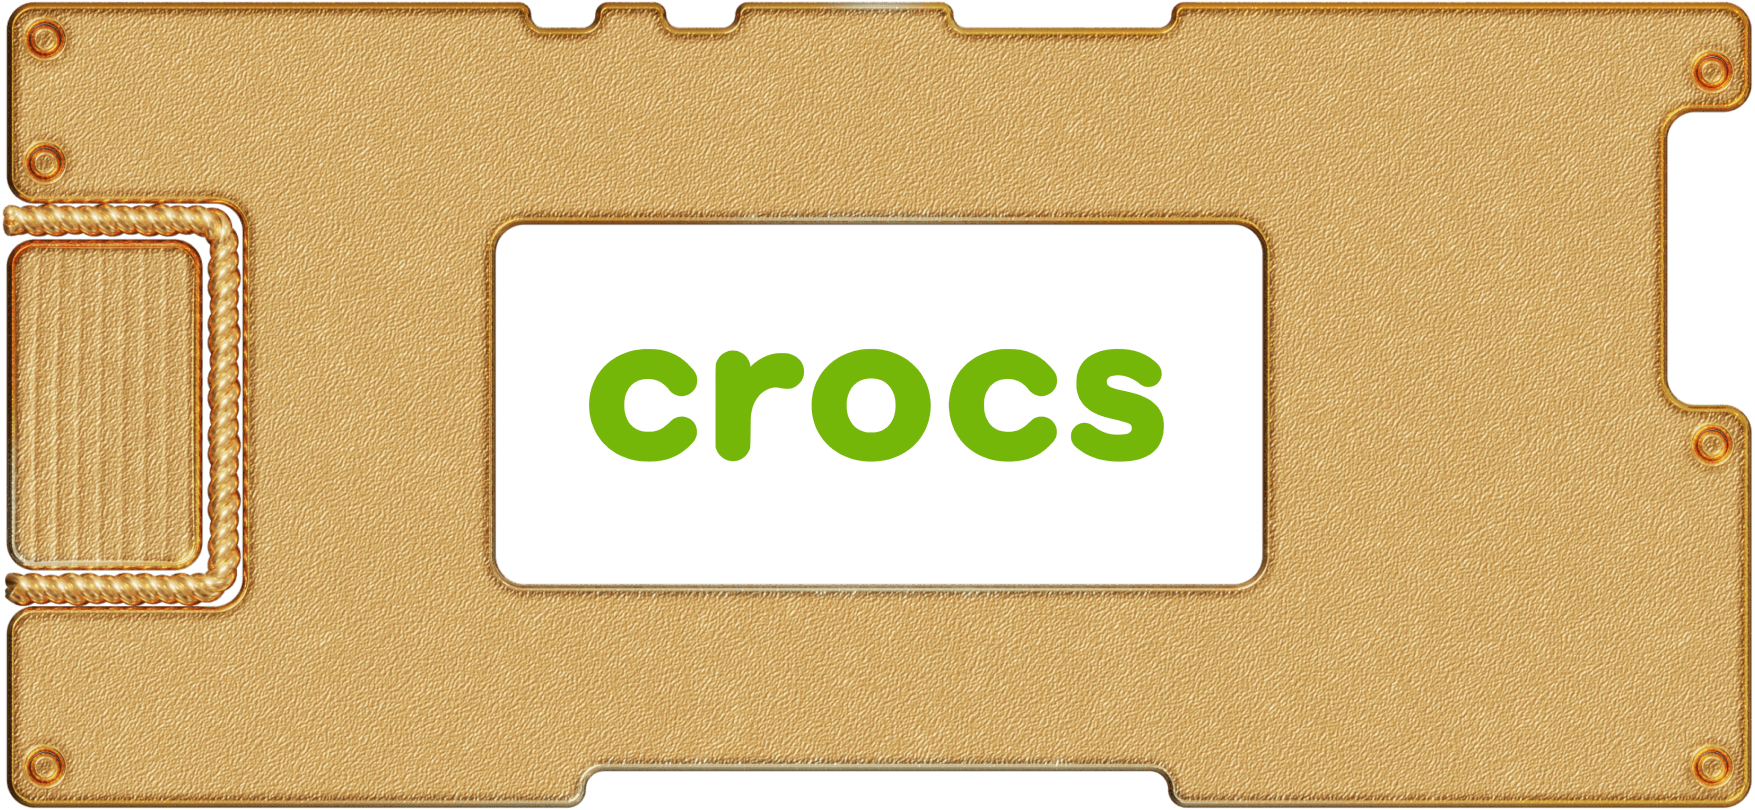 Инвестидея: Crocs, потому что эти галоши в тренде